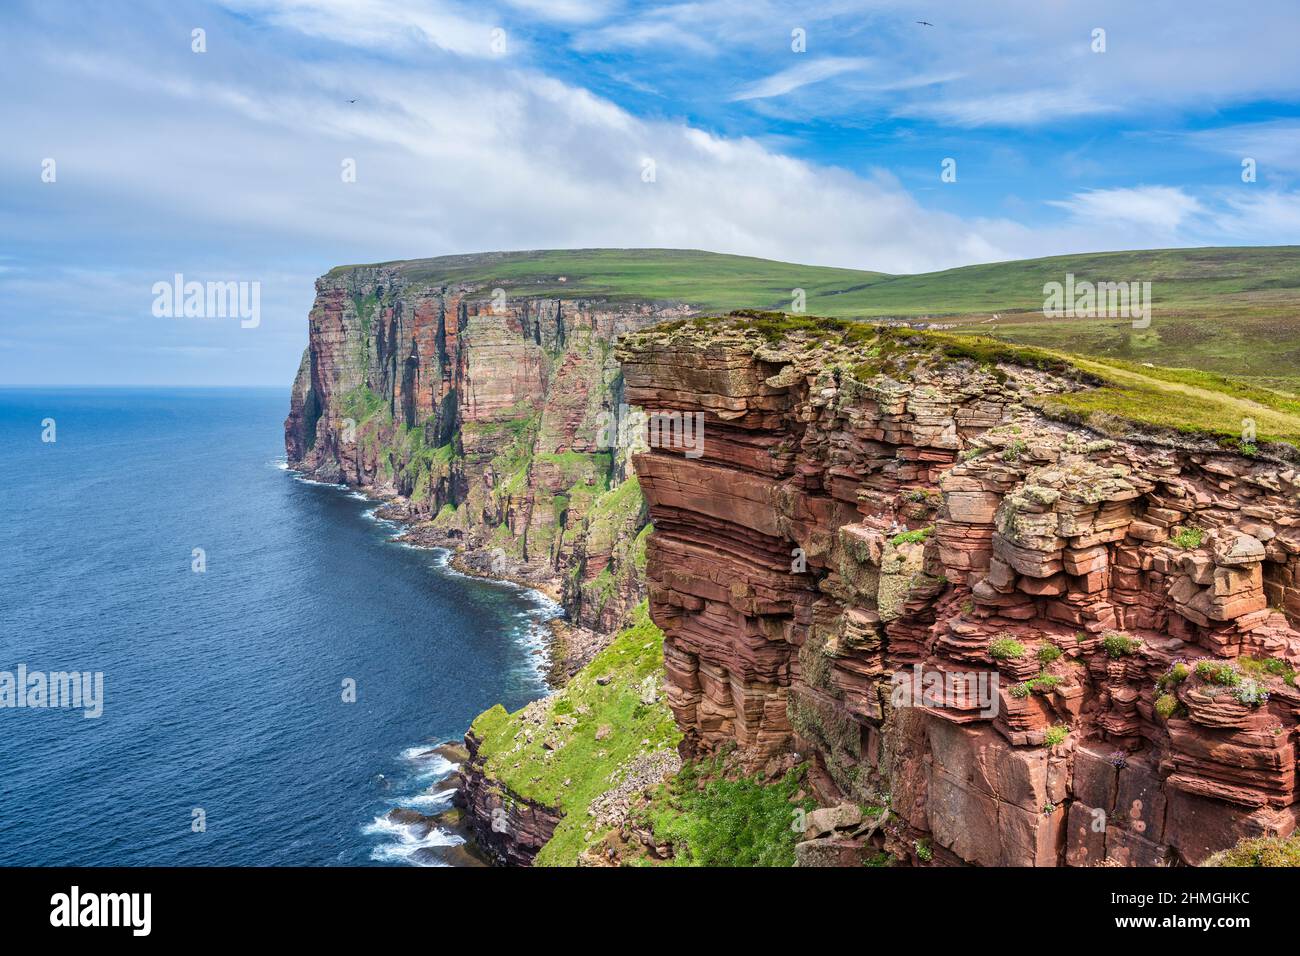 Red sandstone cliffs on northwest coast of Hoy, Isle of Hoy, Orkney, Scotland, UK Stock Photo